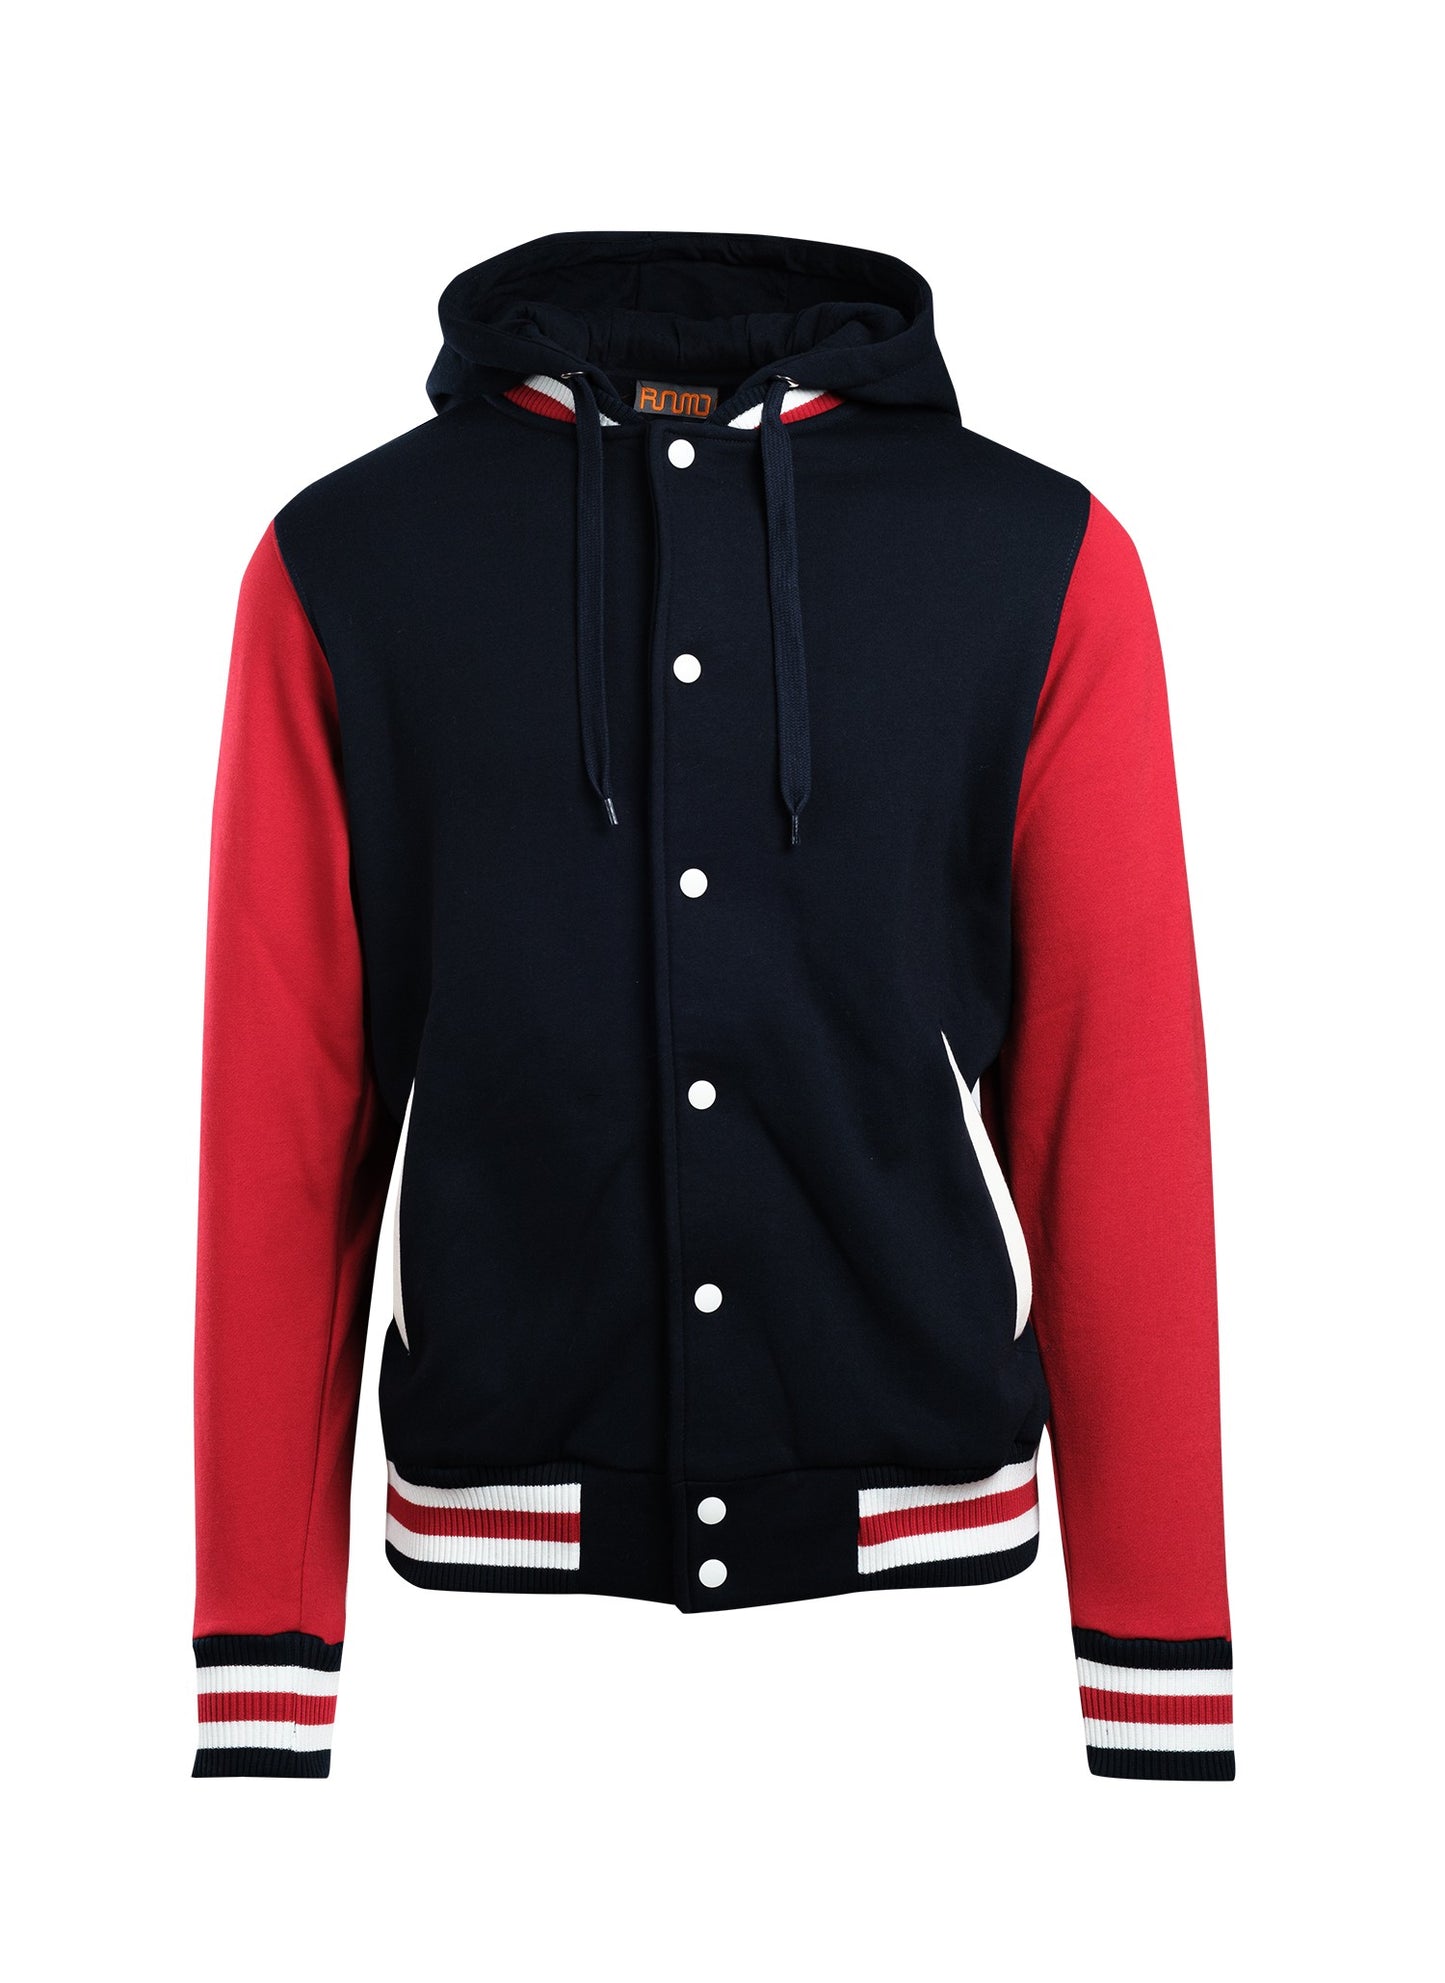 Men's Varsity Jacket & Hood